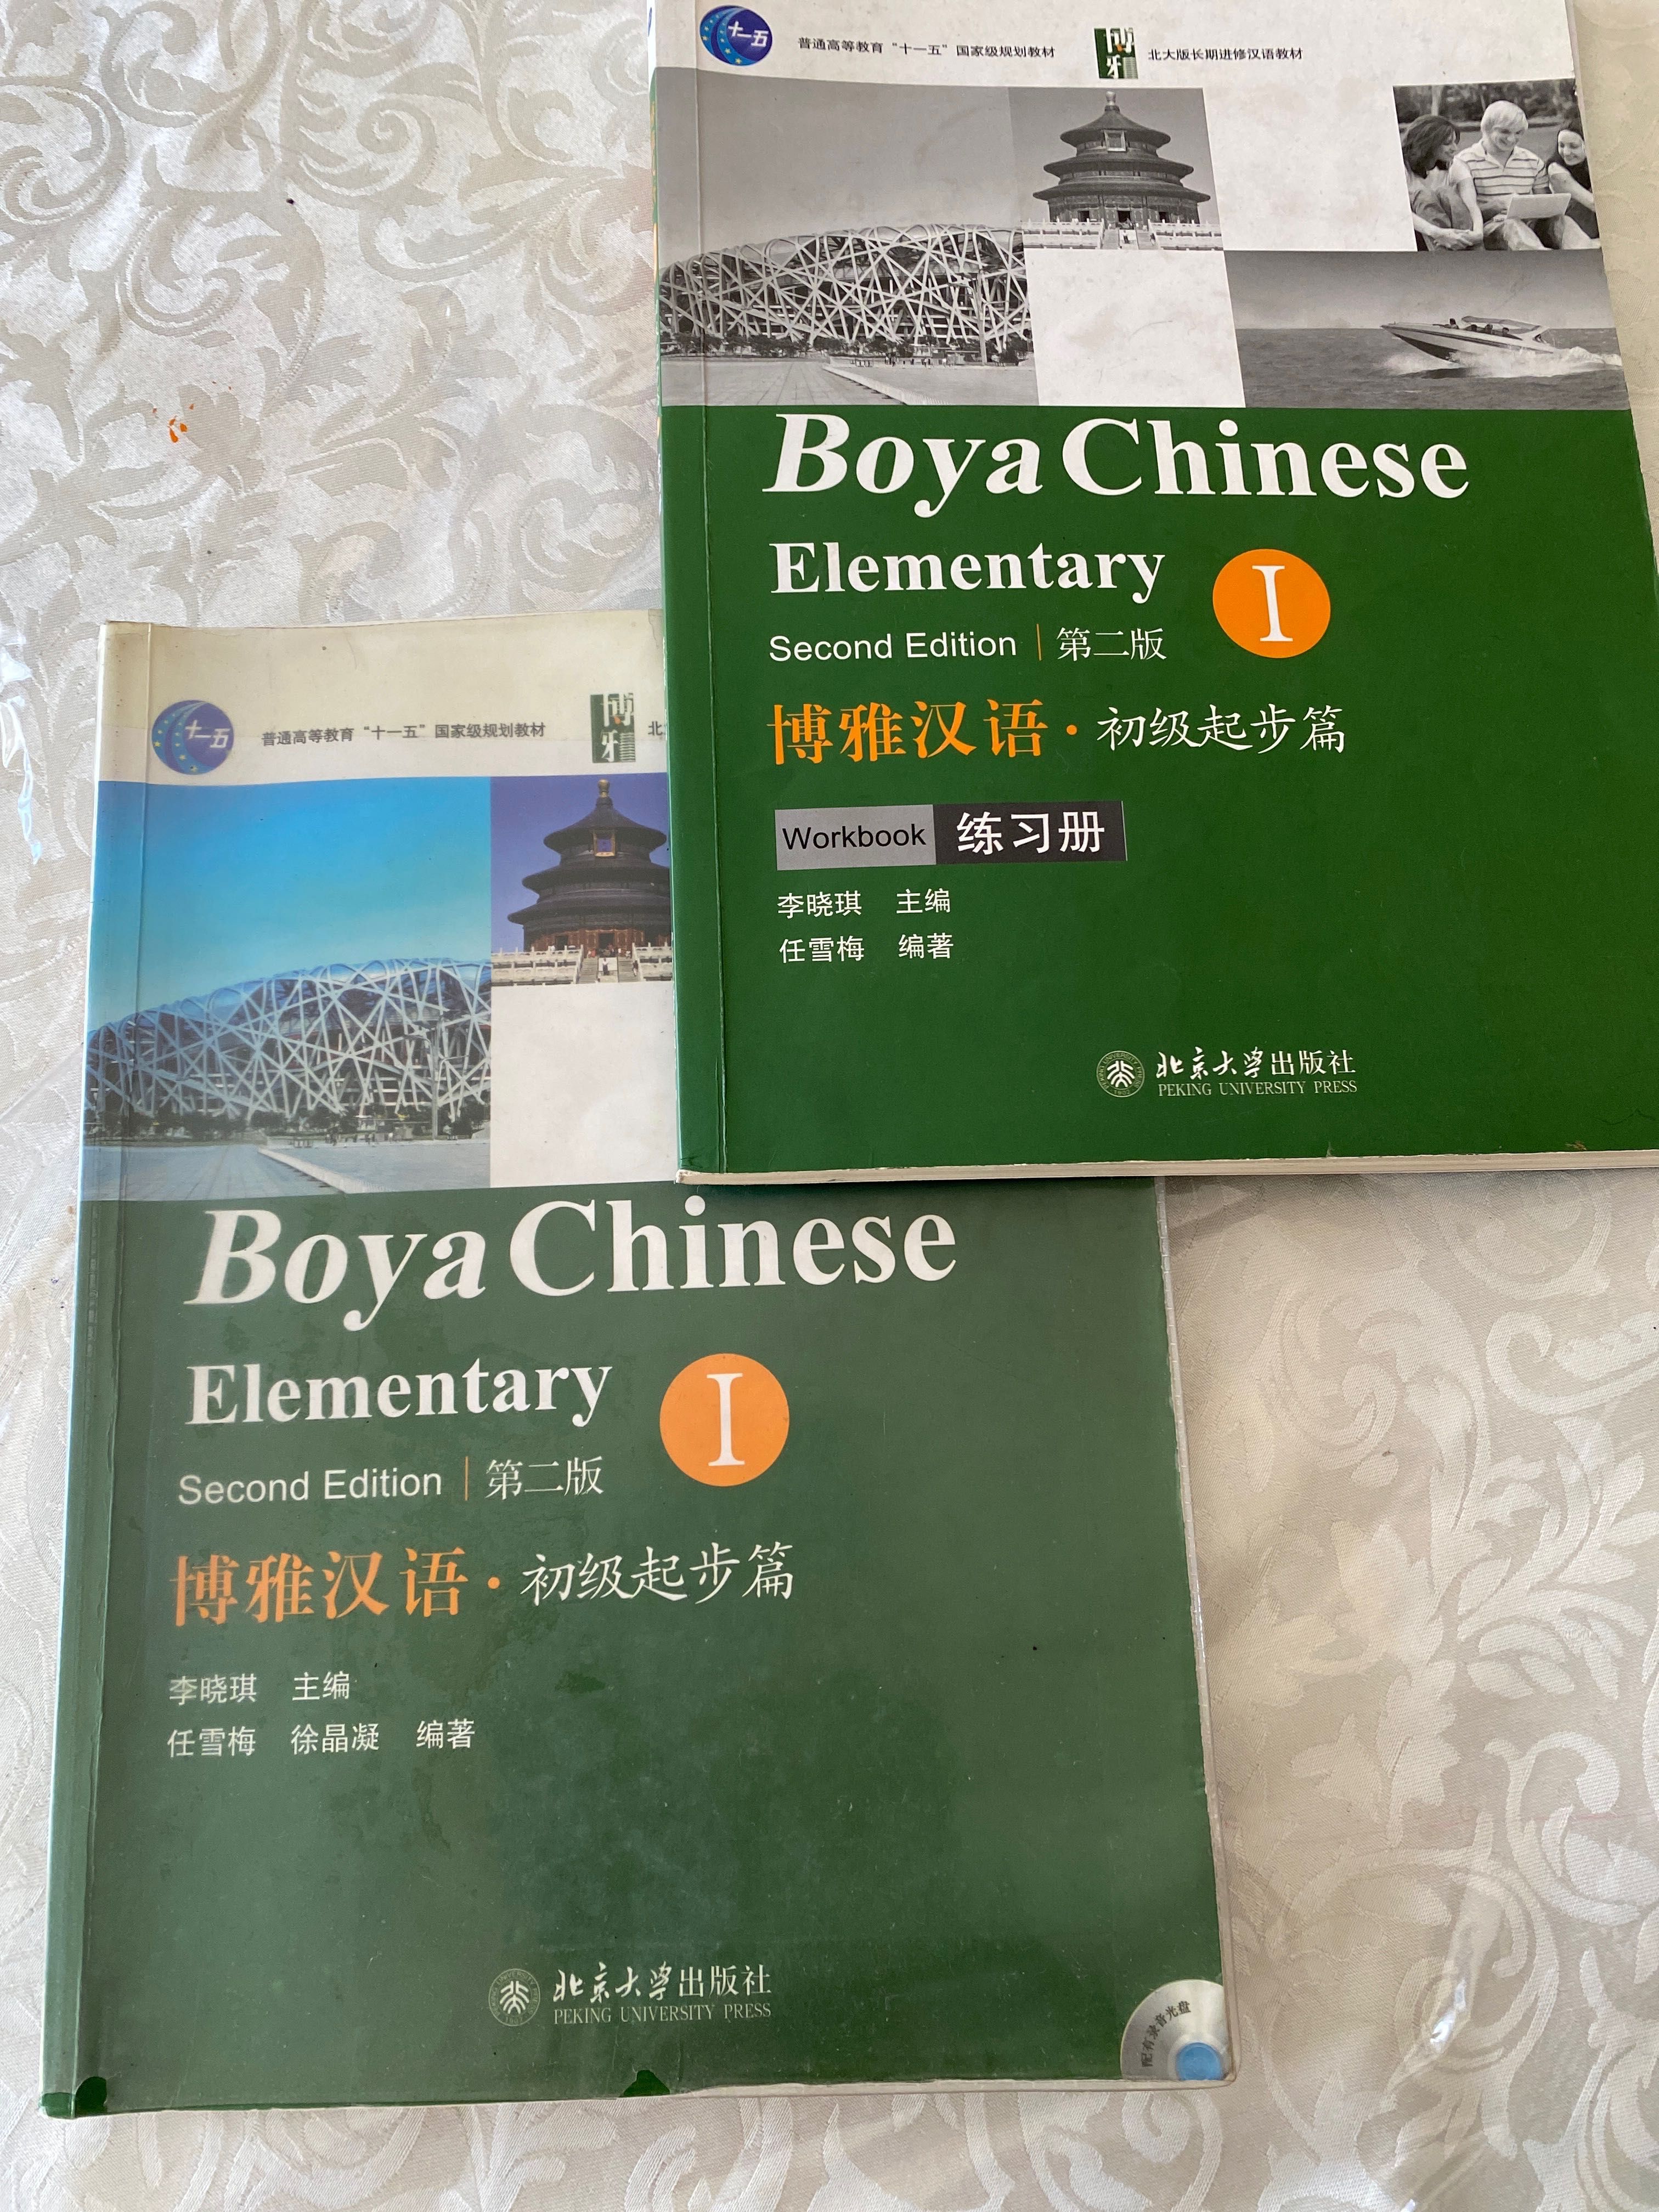 Учебники китайского языка